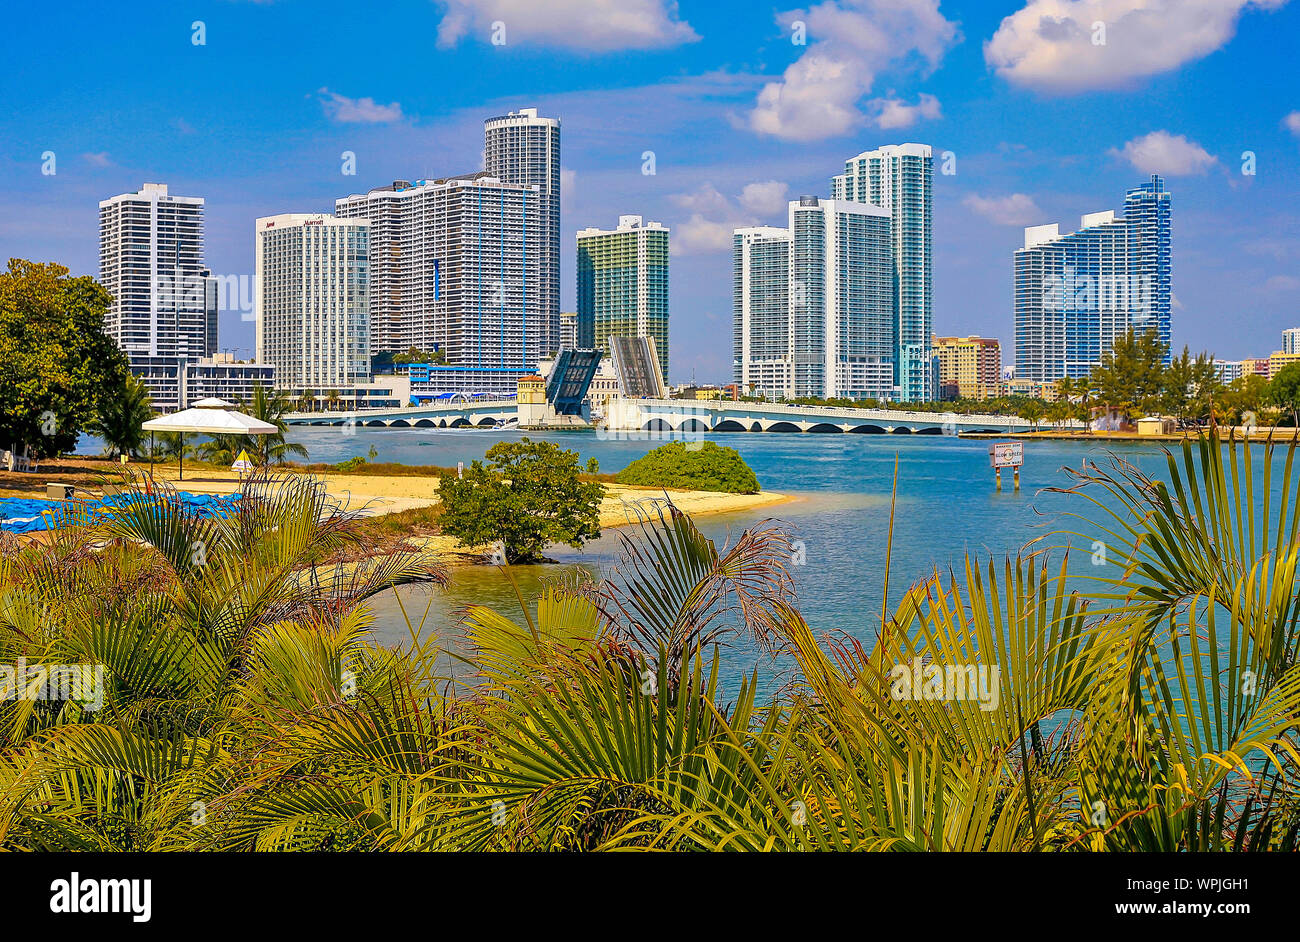 Vue sur la ville de mijamin City en ville de Miami, Miami Beach et South Beach, Florida, USA ; Amérique latine ; Amérique du Nord Banque D'Images